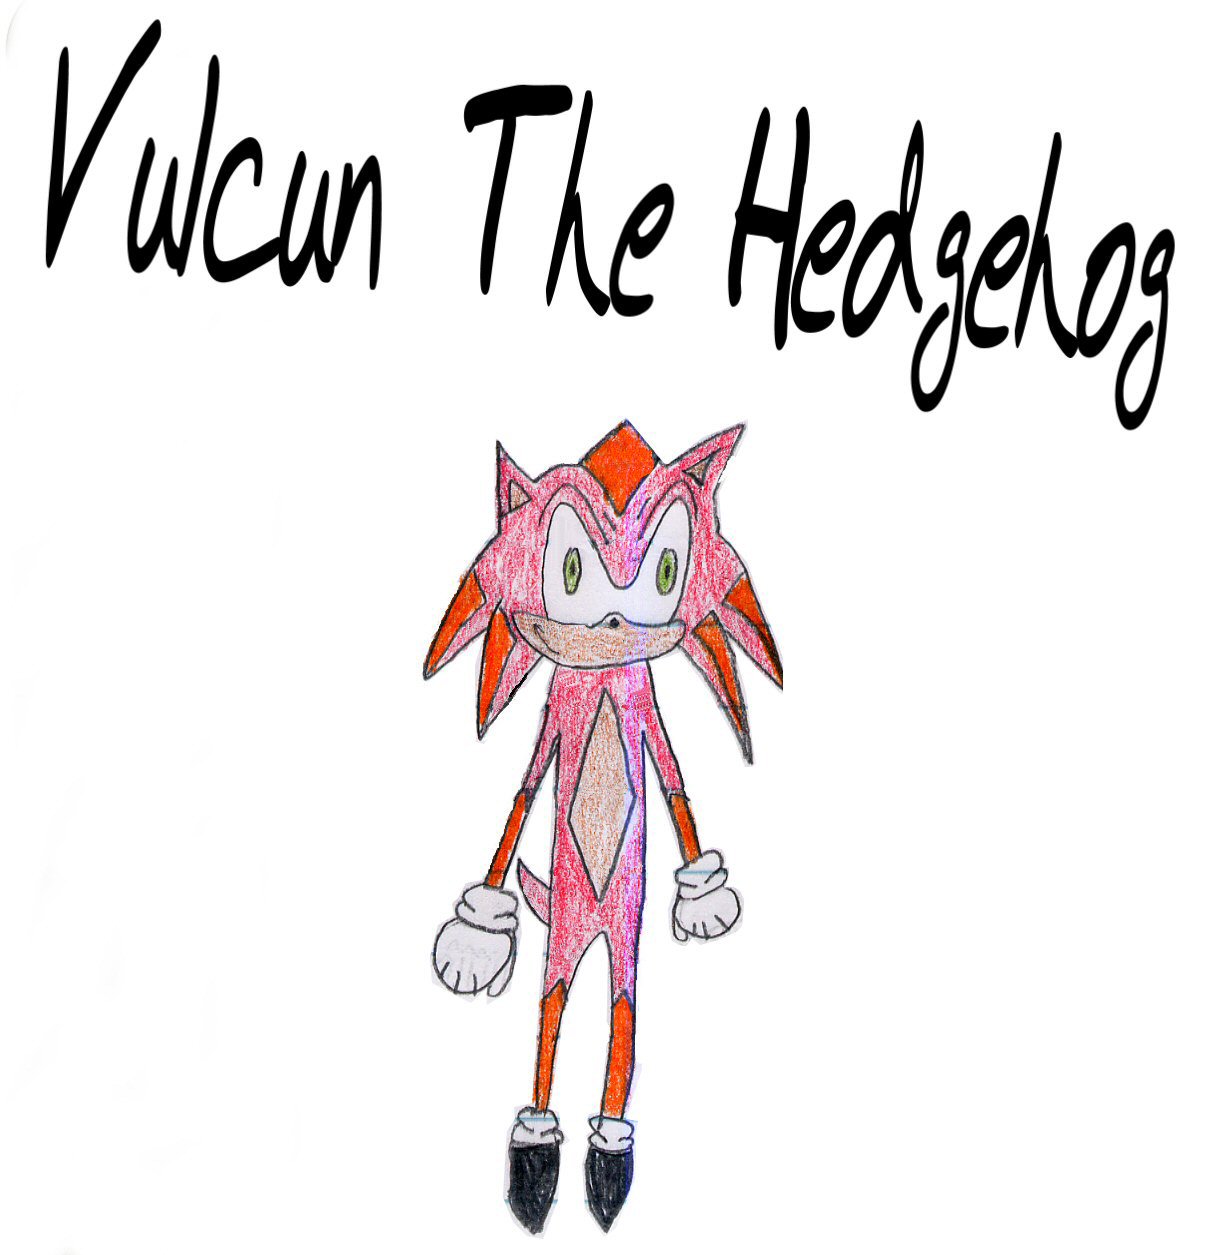 vulcan the hedgehog by HephaestusTheHedgehog